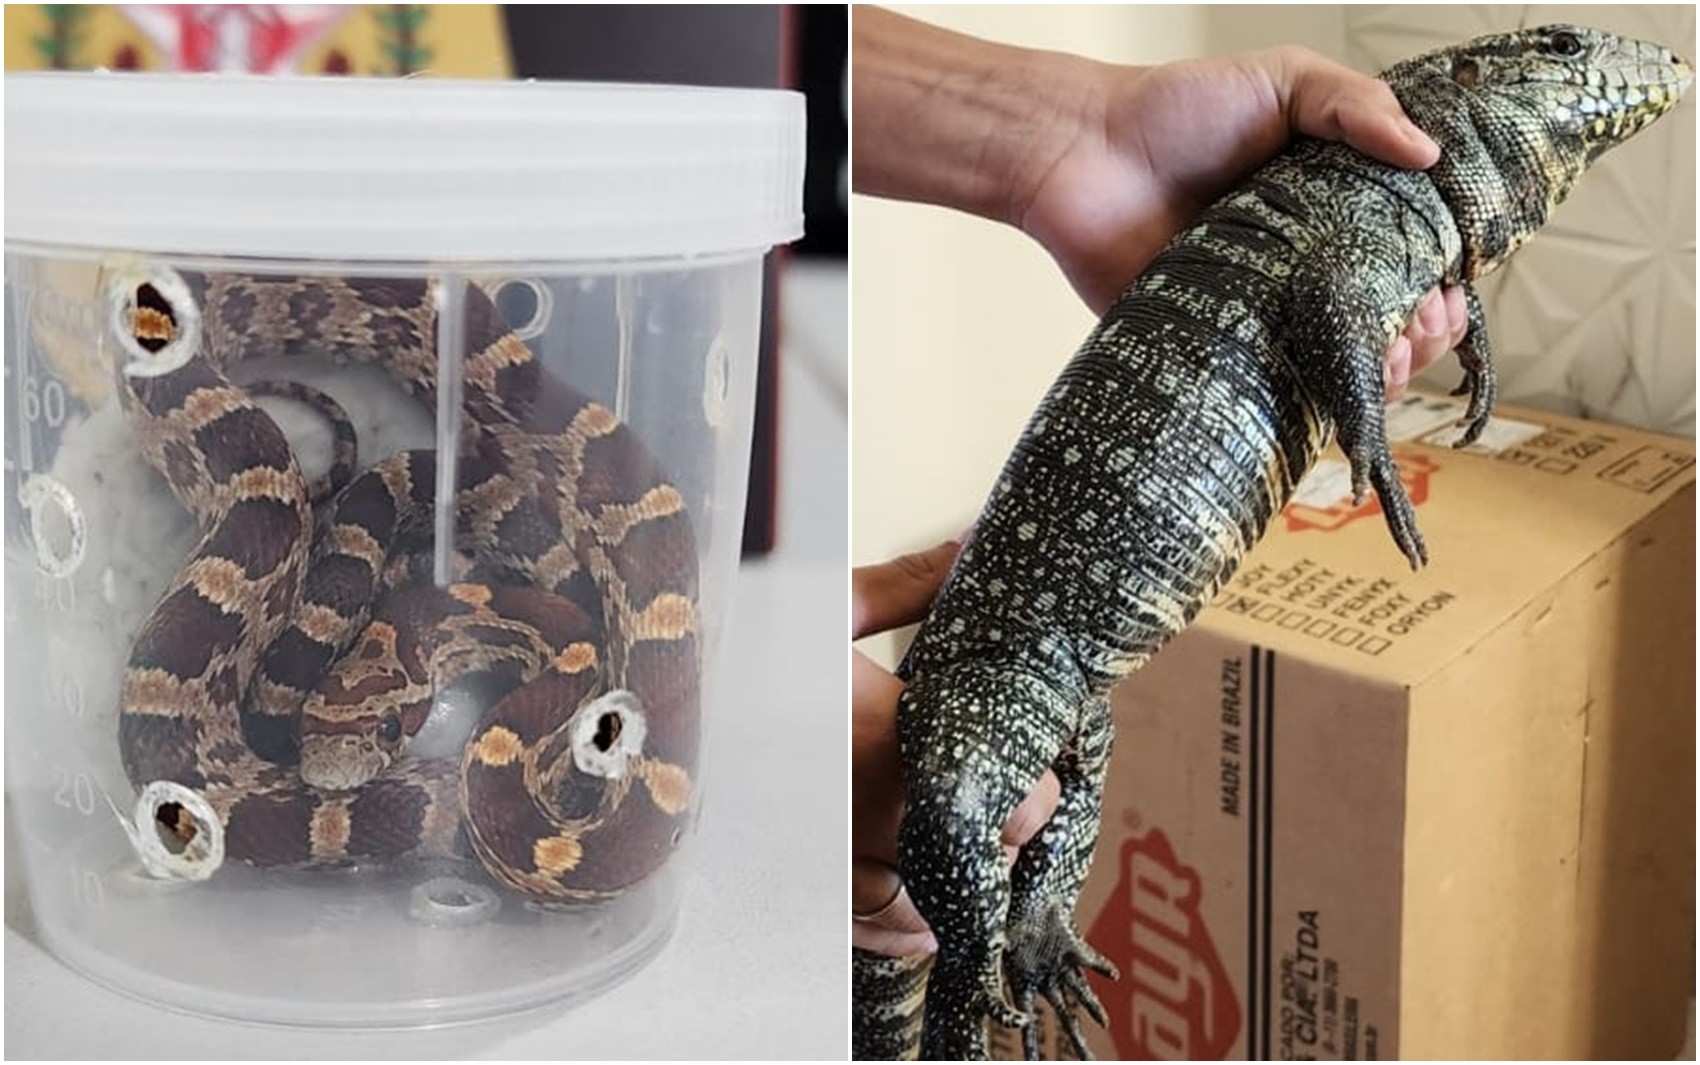 Polícia Civil apreende cobras exóticas e lagarto teiú que seriam enviados por Correios em Lavras, MG